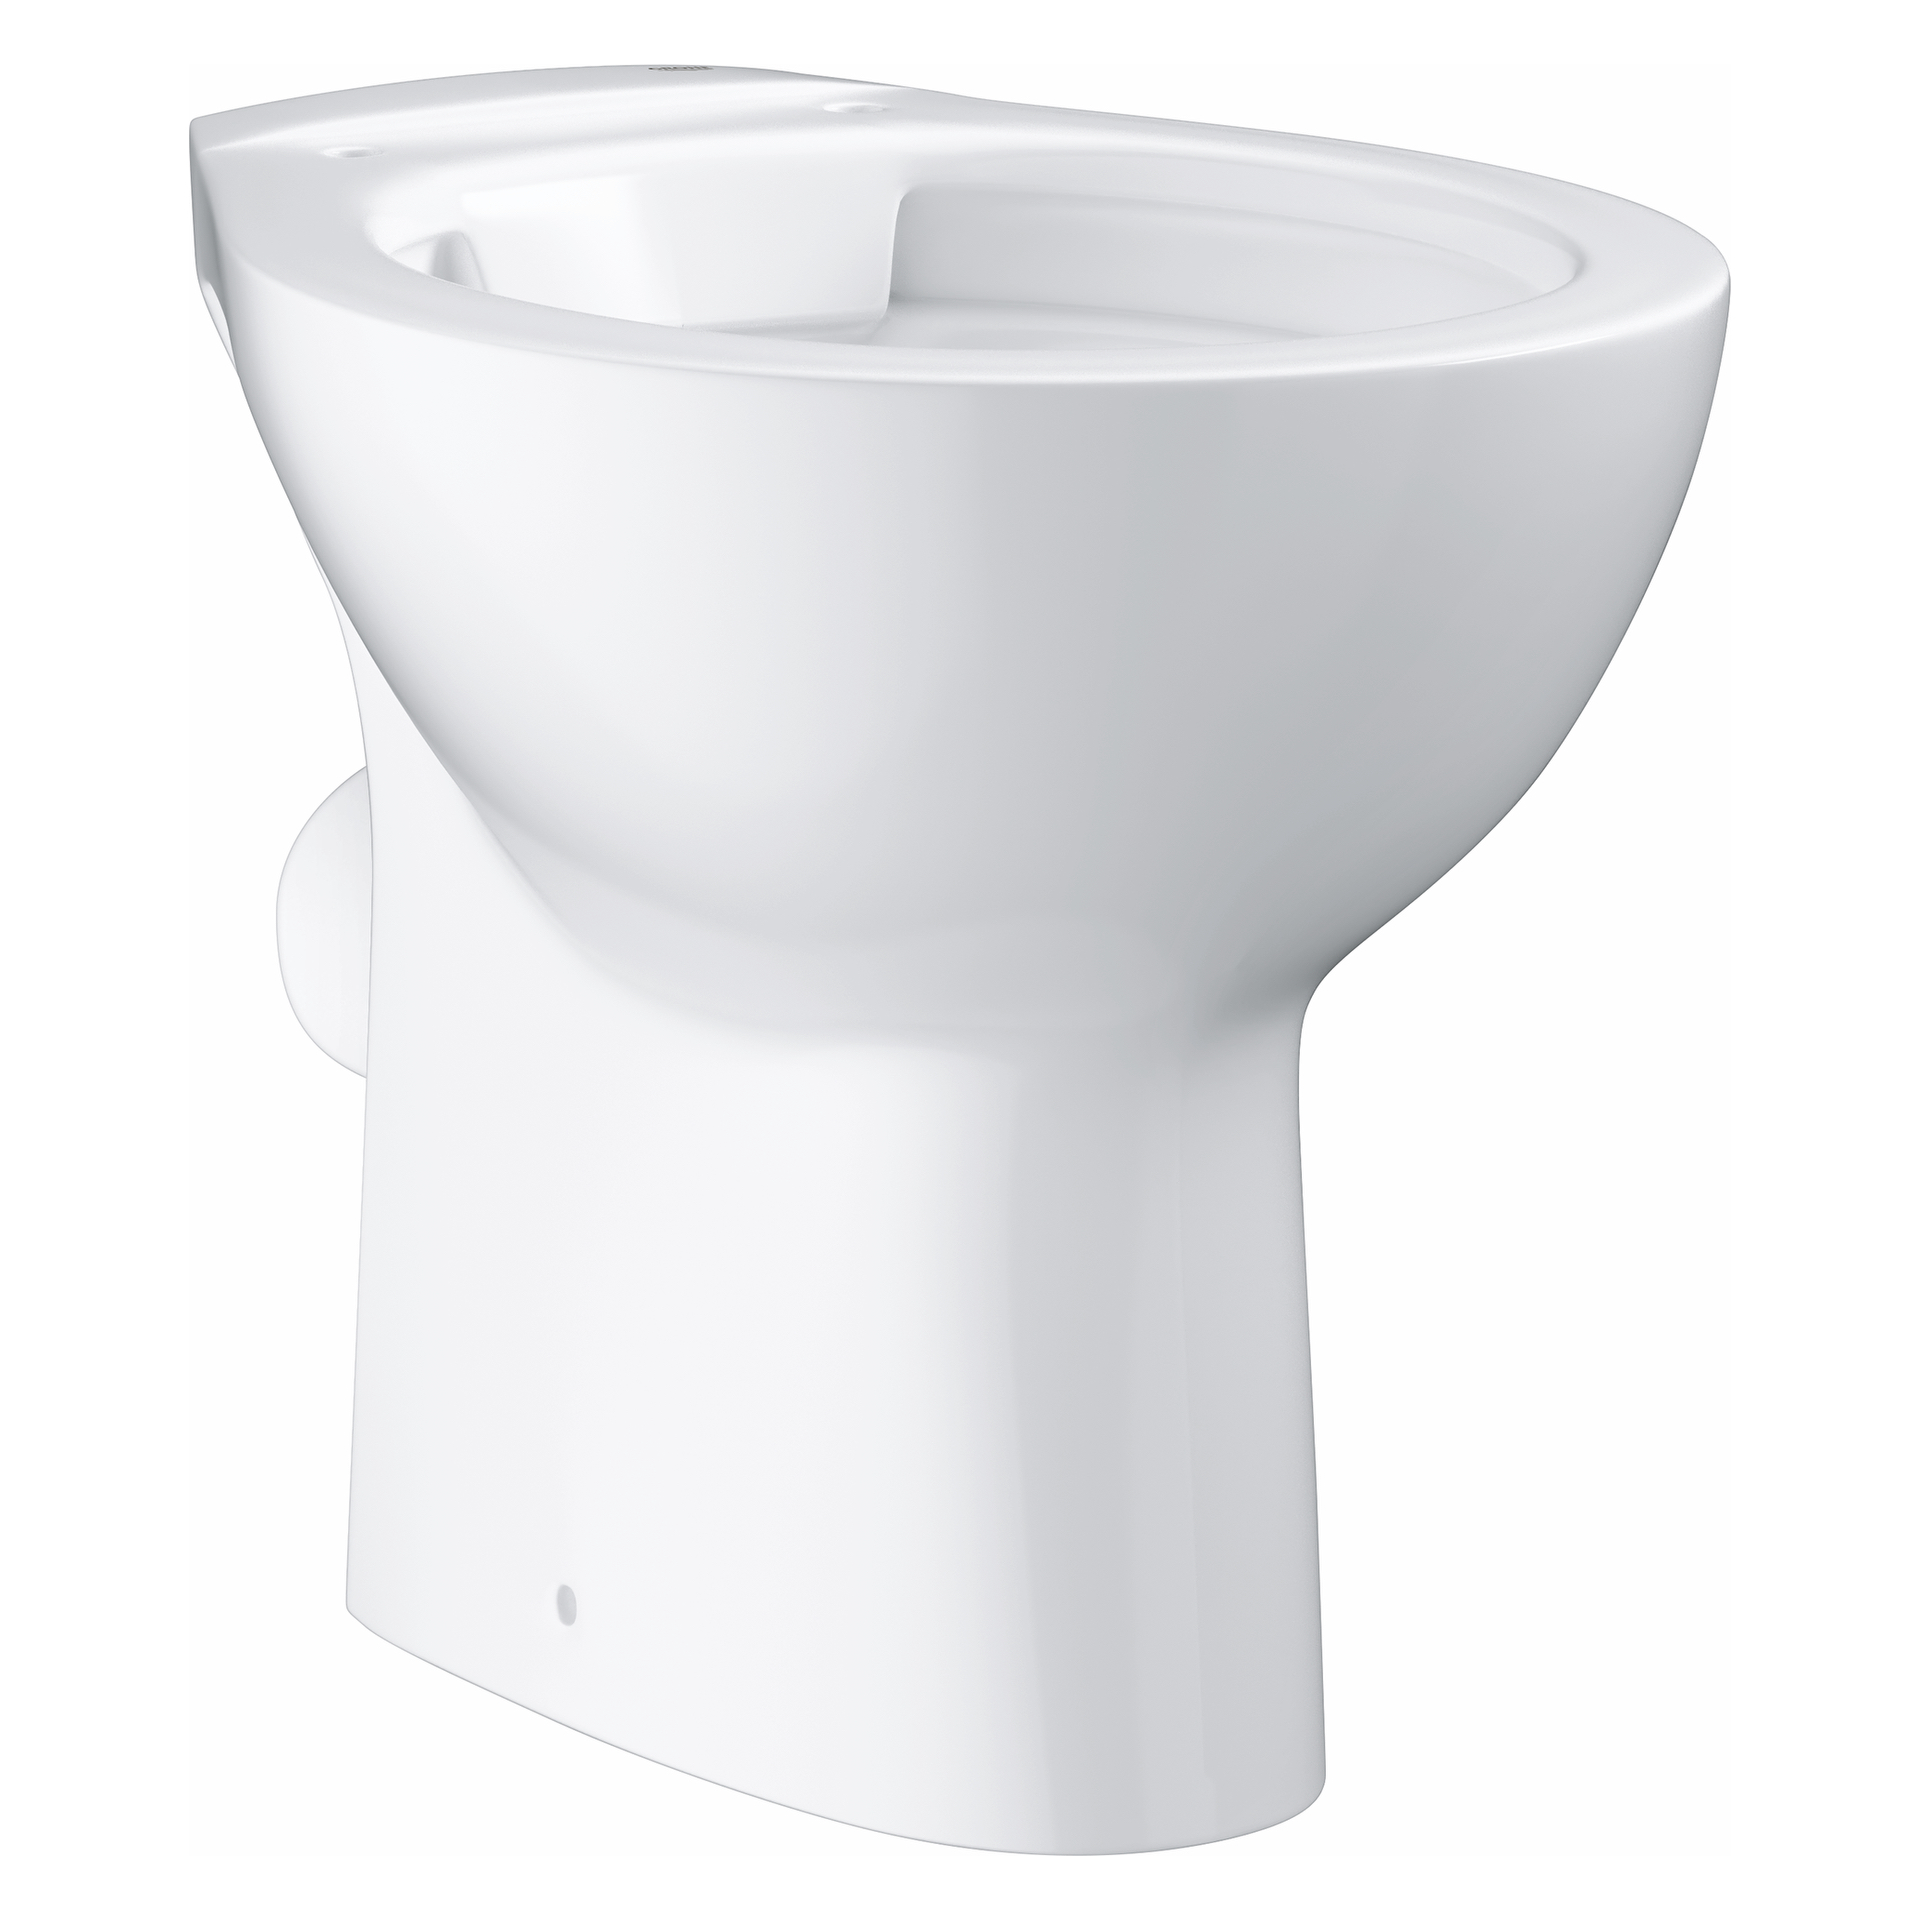 GROHE Stand-Tiefspül-WC Bau Keramik 39430, Abgang waagerecht, spülrandlos, aus Sanitärkeramik, alpinweiß